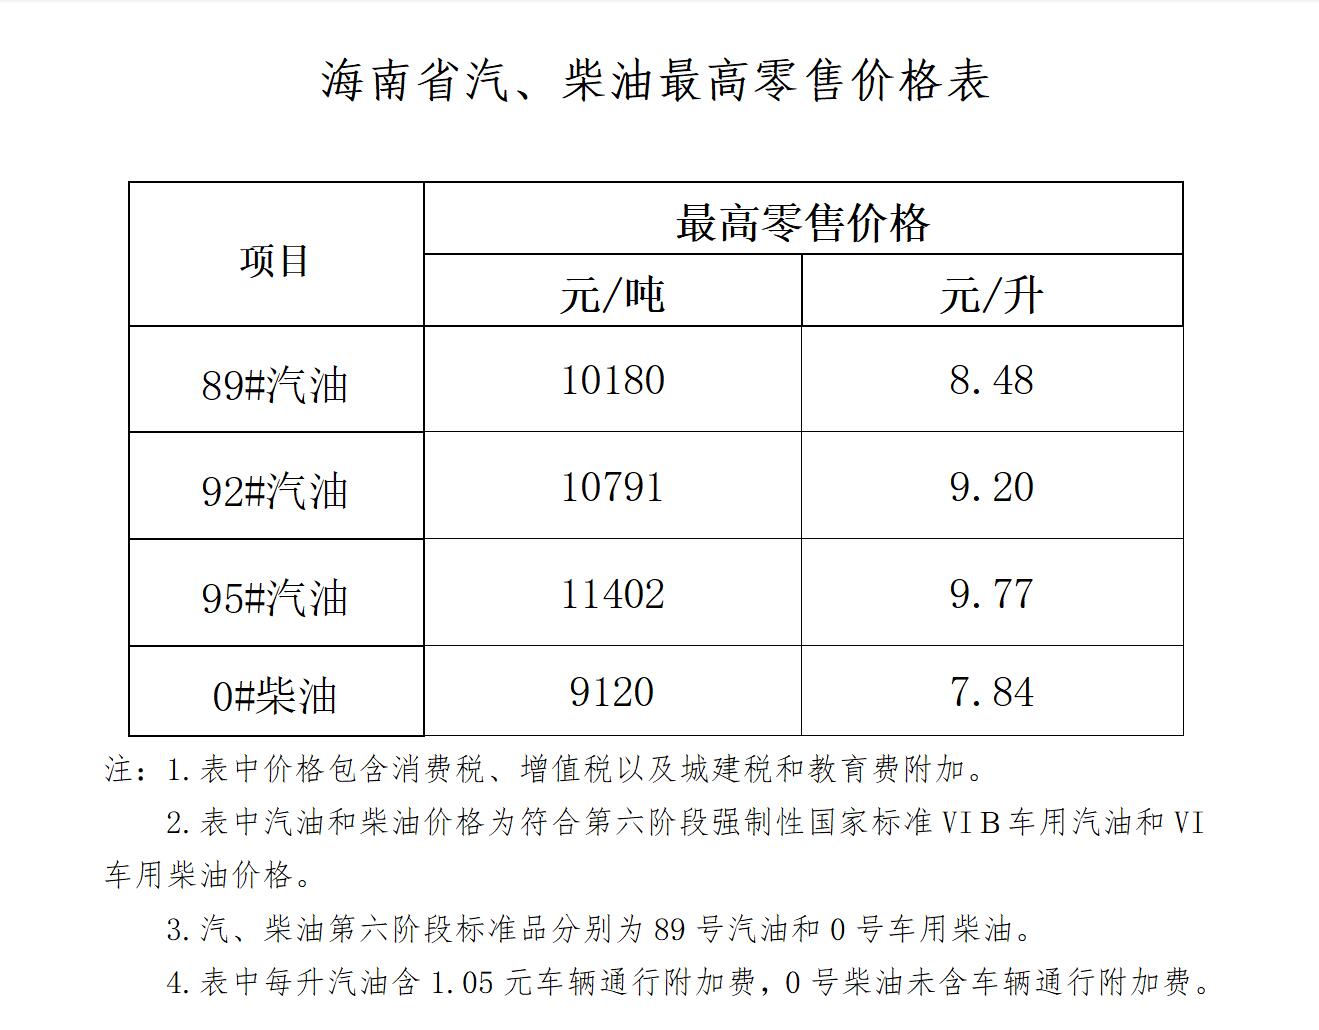 海南省成品油價格上調 92號9.20元/升